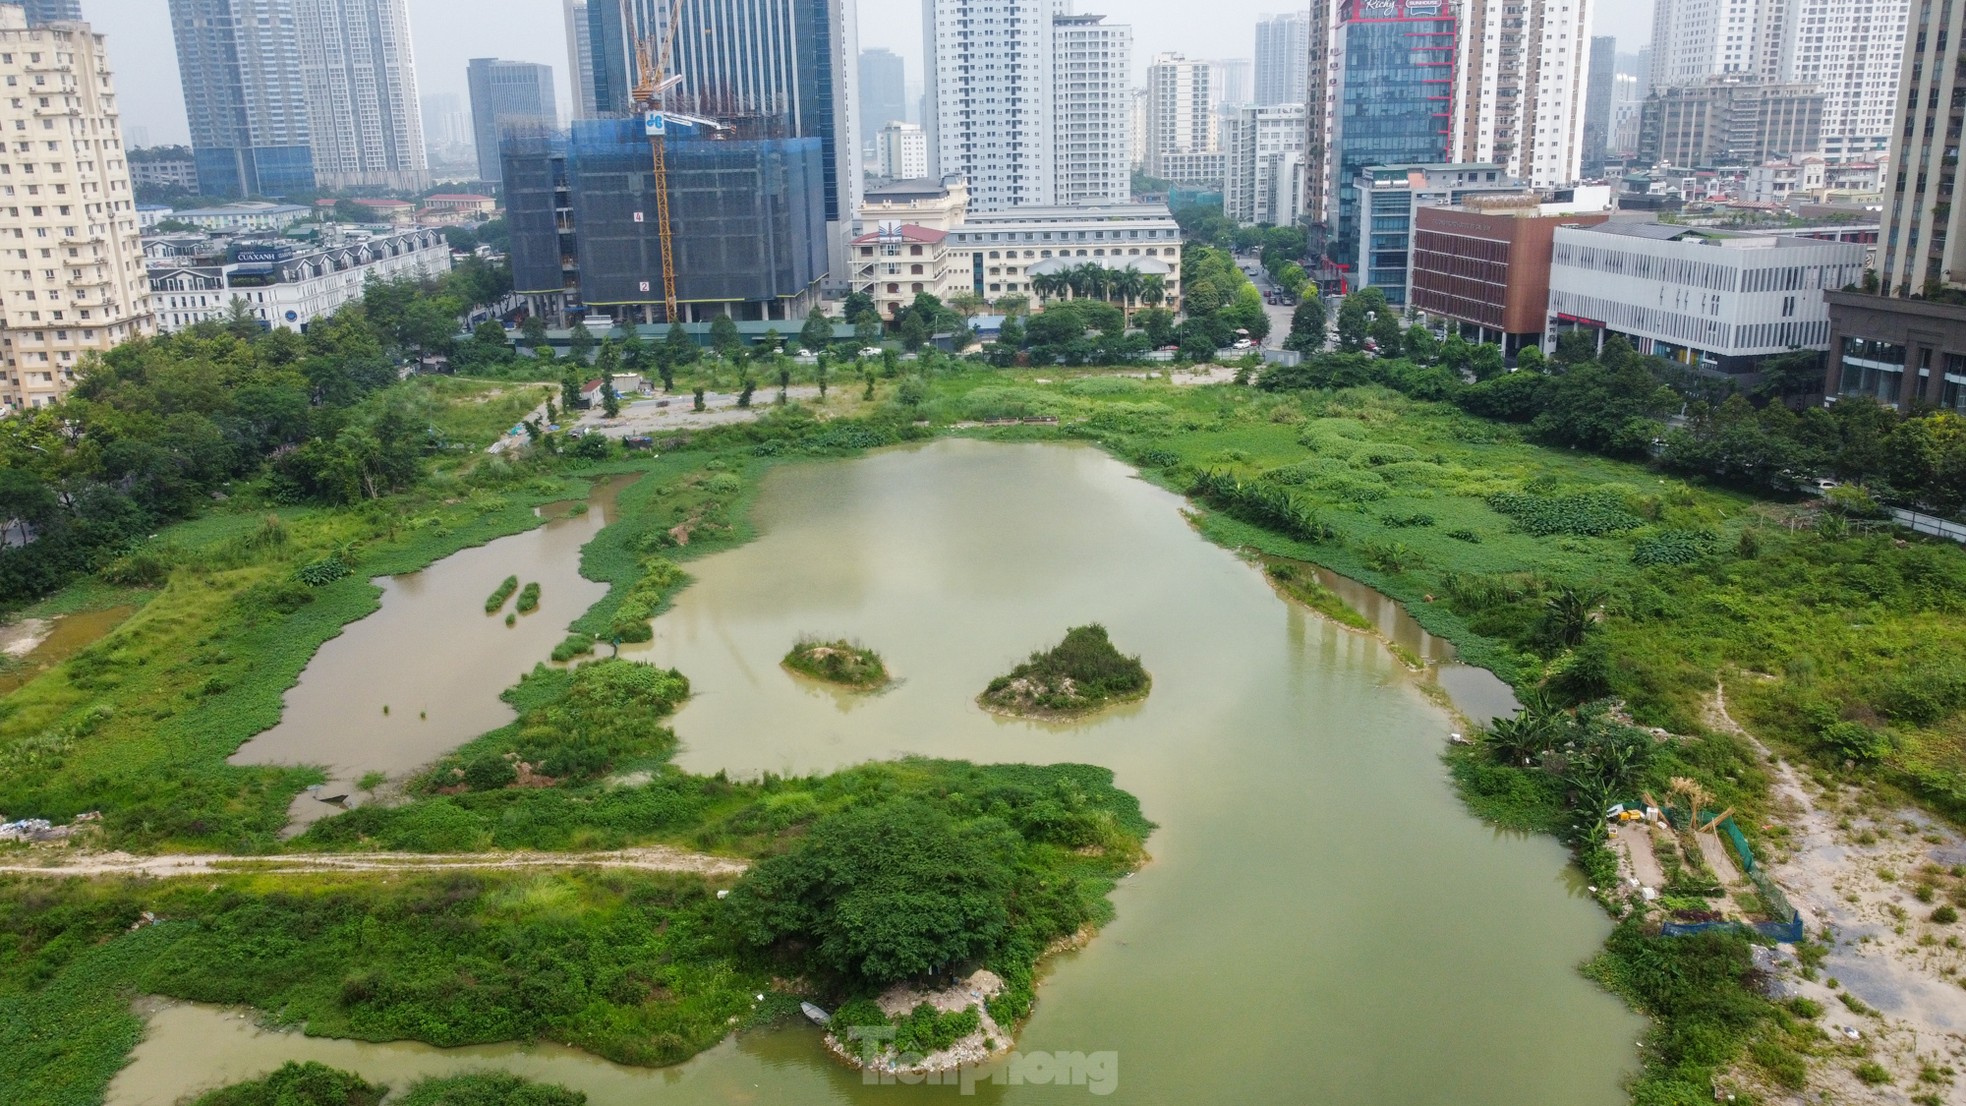 Toàn cảnh công viên hồ điều hoà nghìn tỷ ở Thủ đô bỏ hoang sau nhiều năm được khởi công - Ảnh 2.